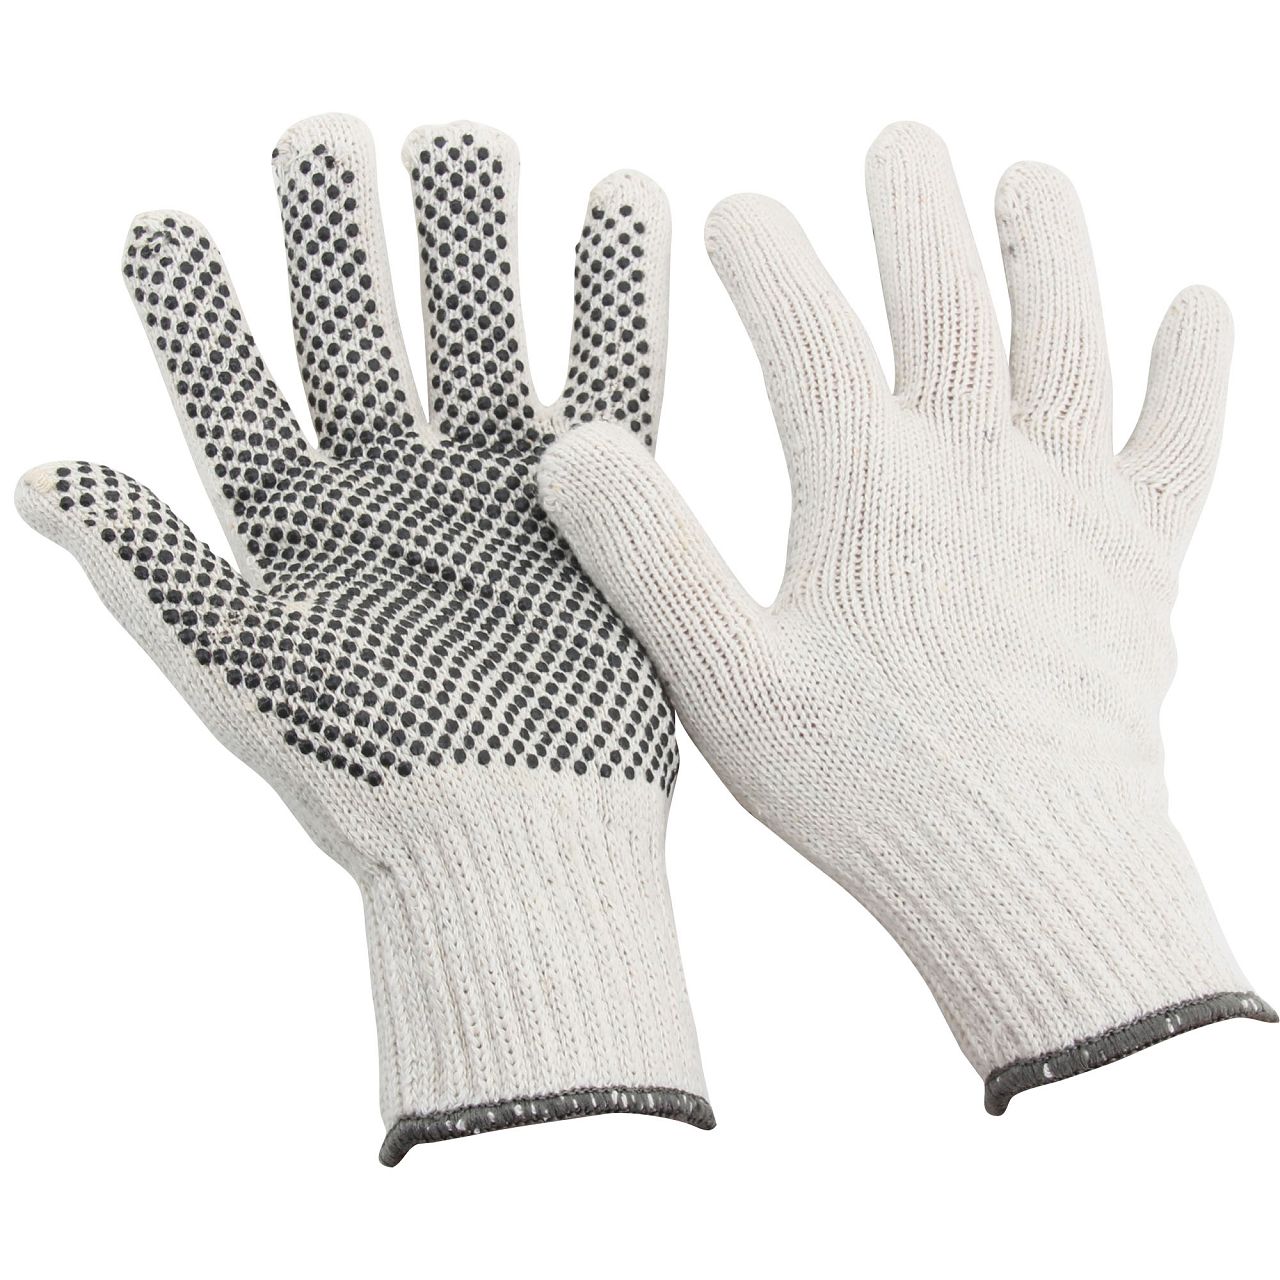 Handschuhe Arbeitshandschuhe BAUMWOLLE - GENOPPT Größe 10 / XL (12 Paar)